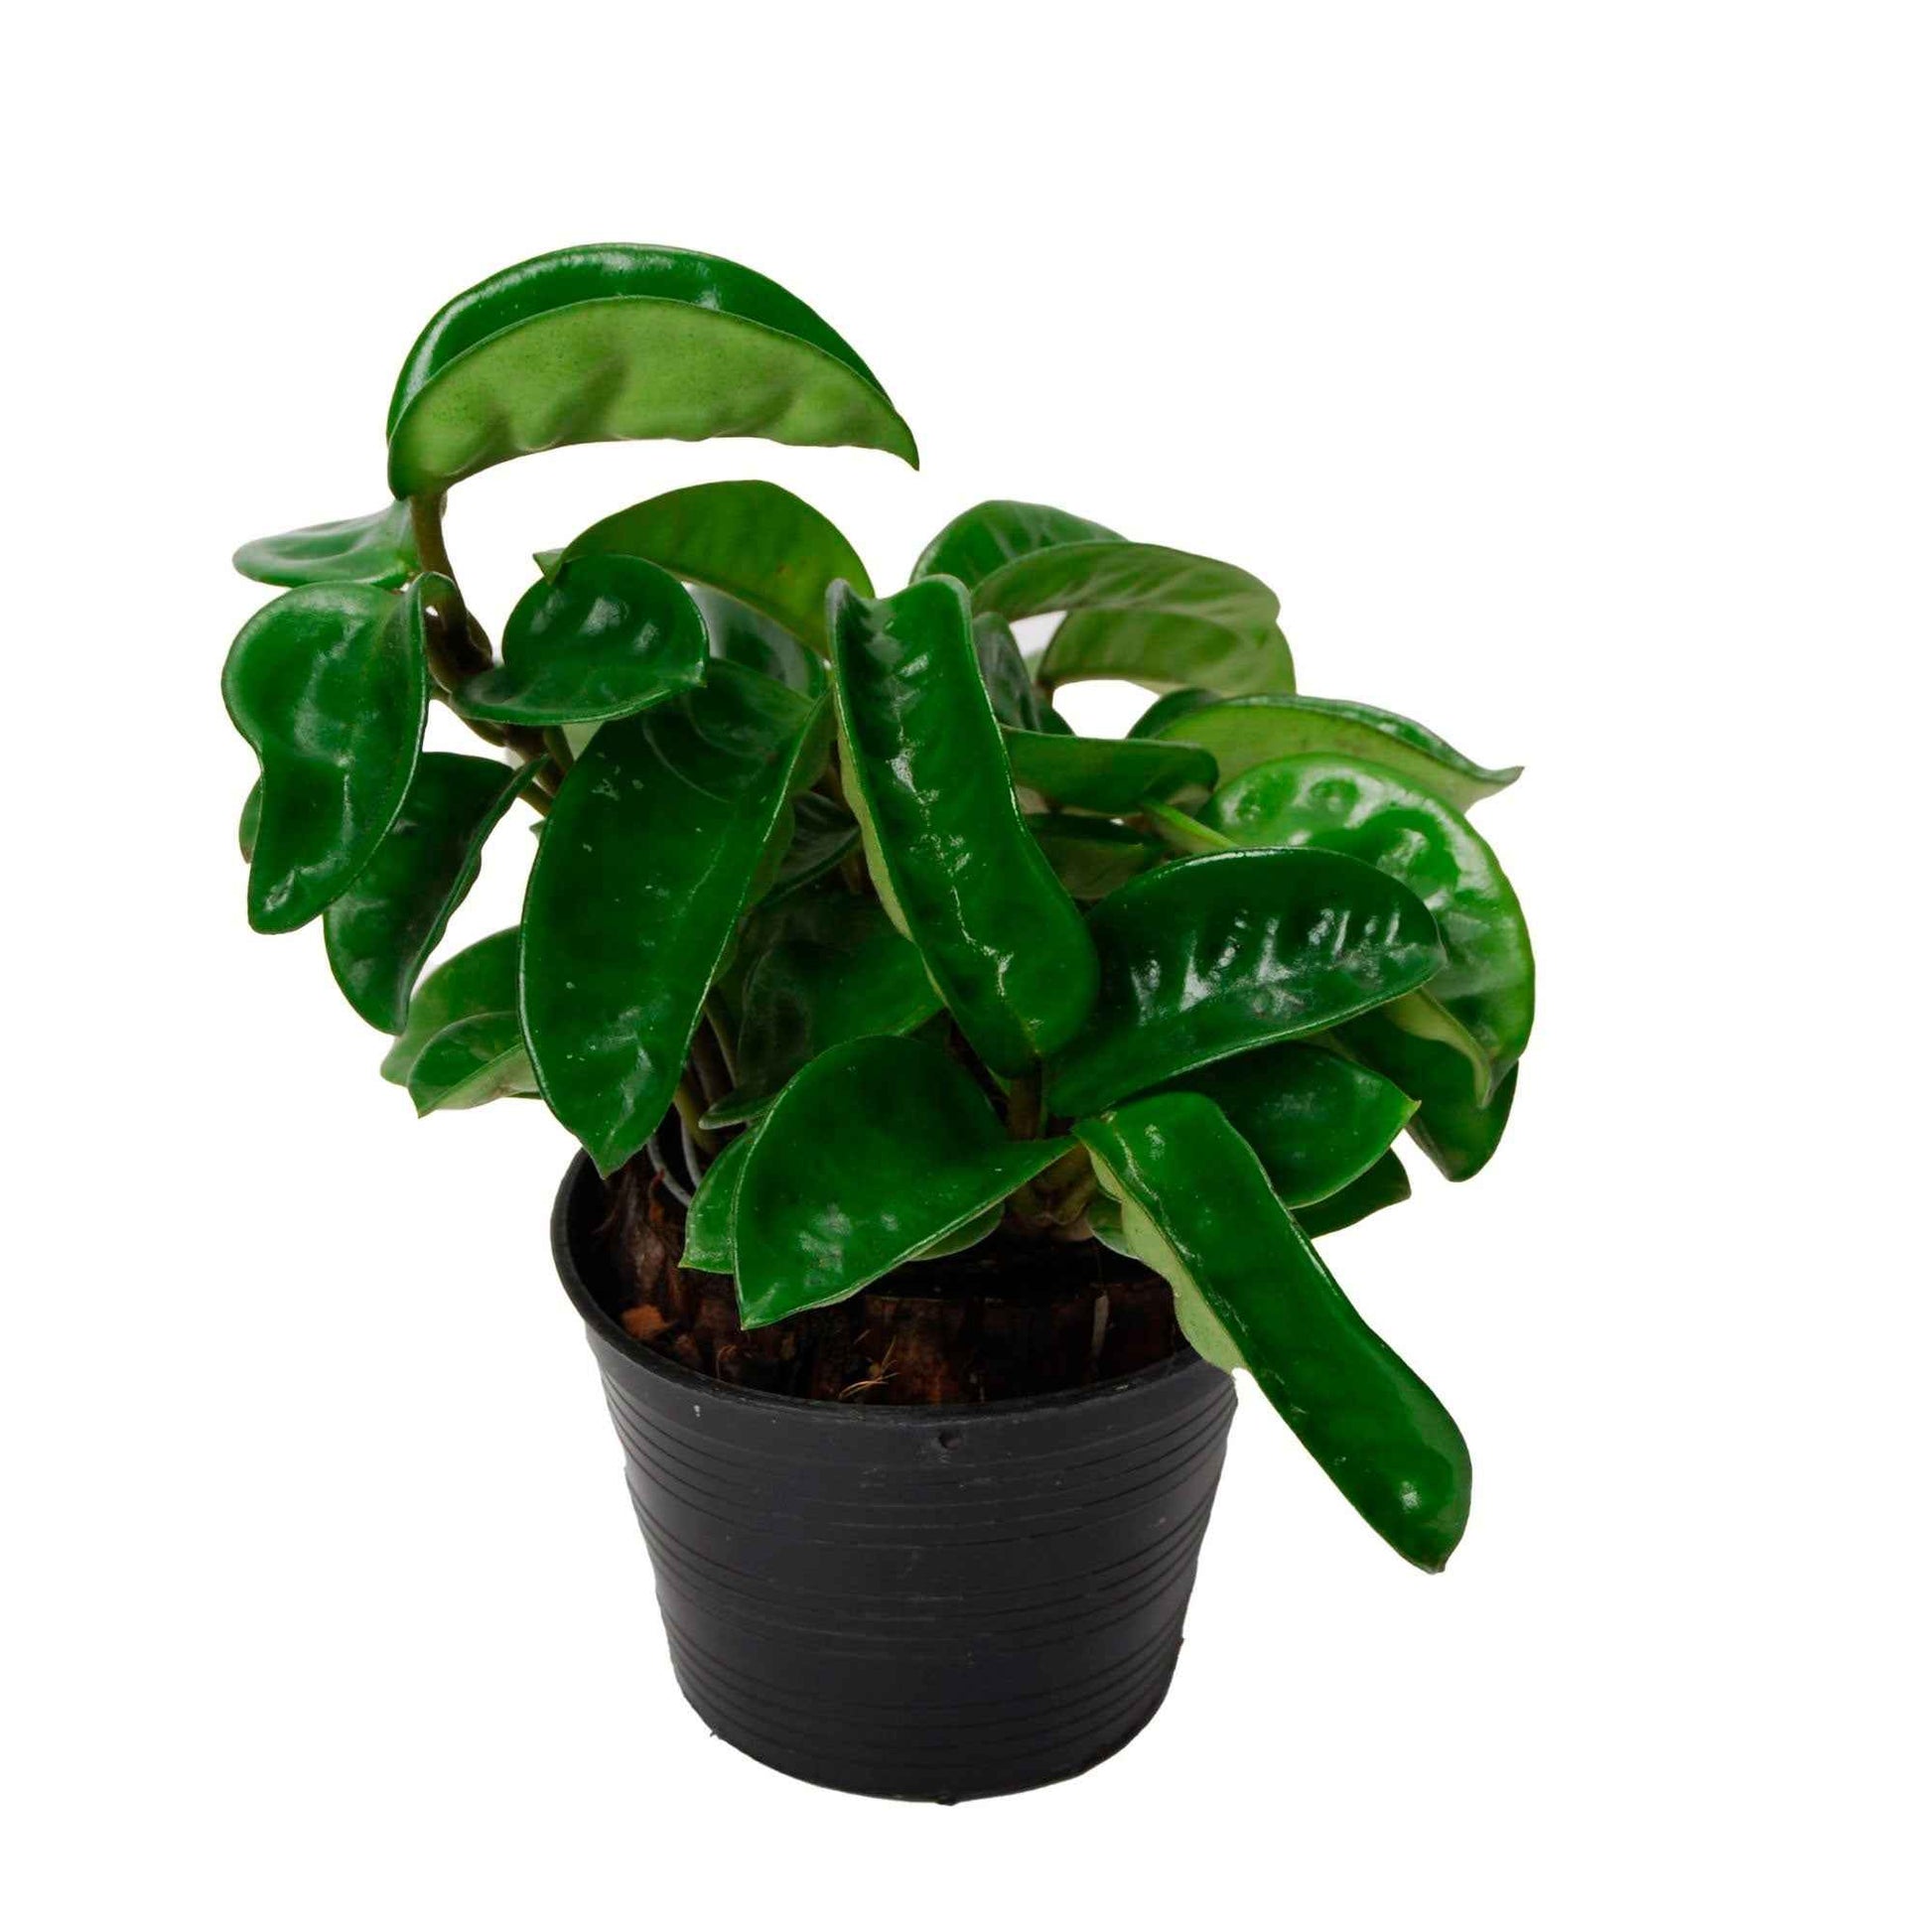 Wachsblume Hoya Krinkle - Hängepflanze - Bio - 1x Lieferhöhe 45-60 cm, Topfgröße Durchmesser 15 cm - Hängepflanzen - undefined